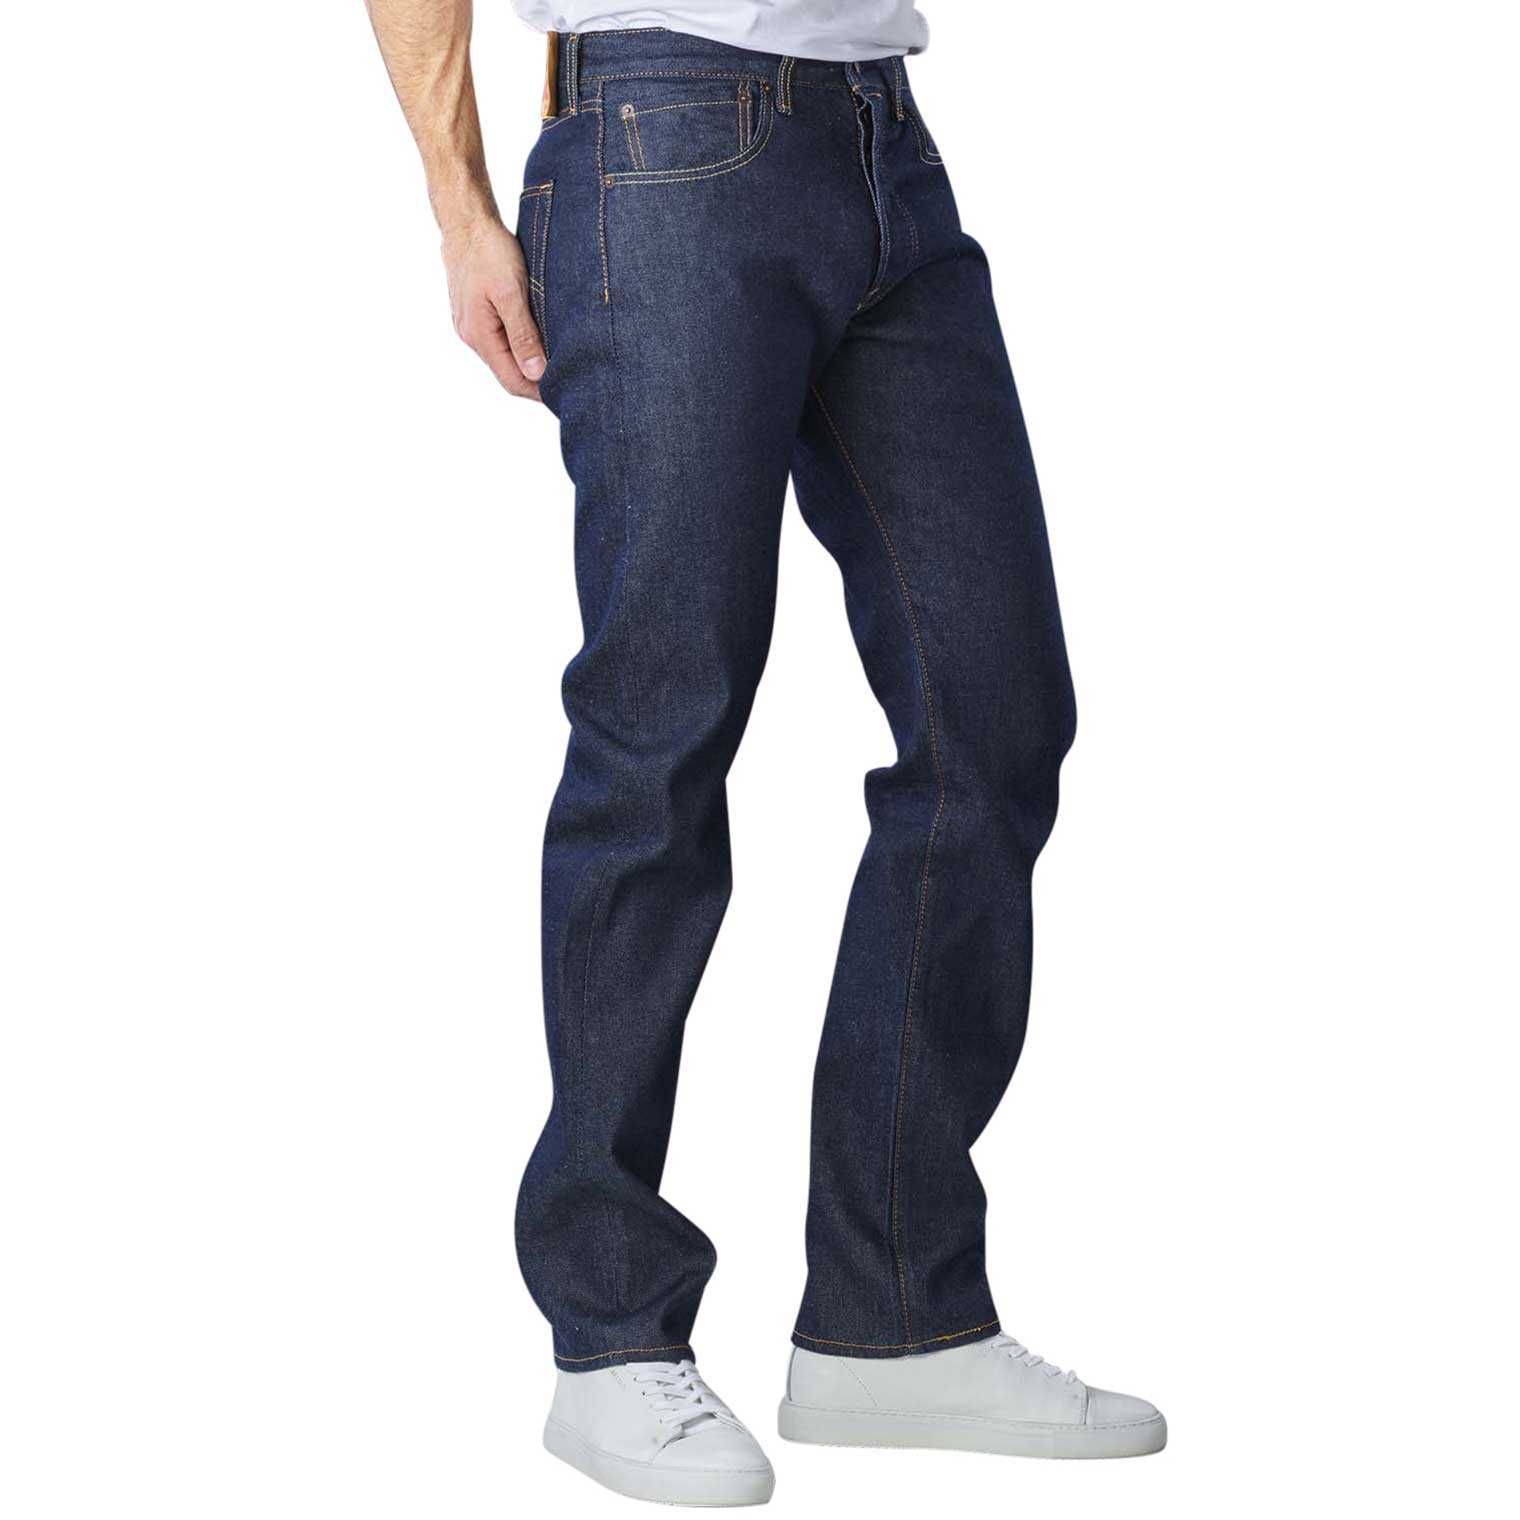 Новые мужские джинсы Levis 501 больших и нестандартных размеров Левис